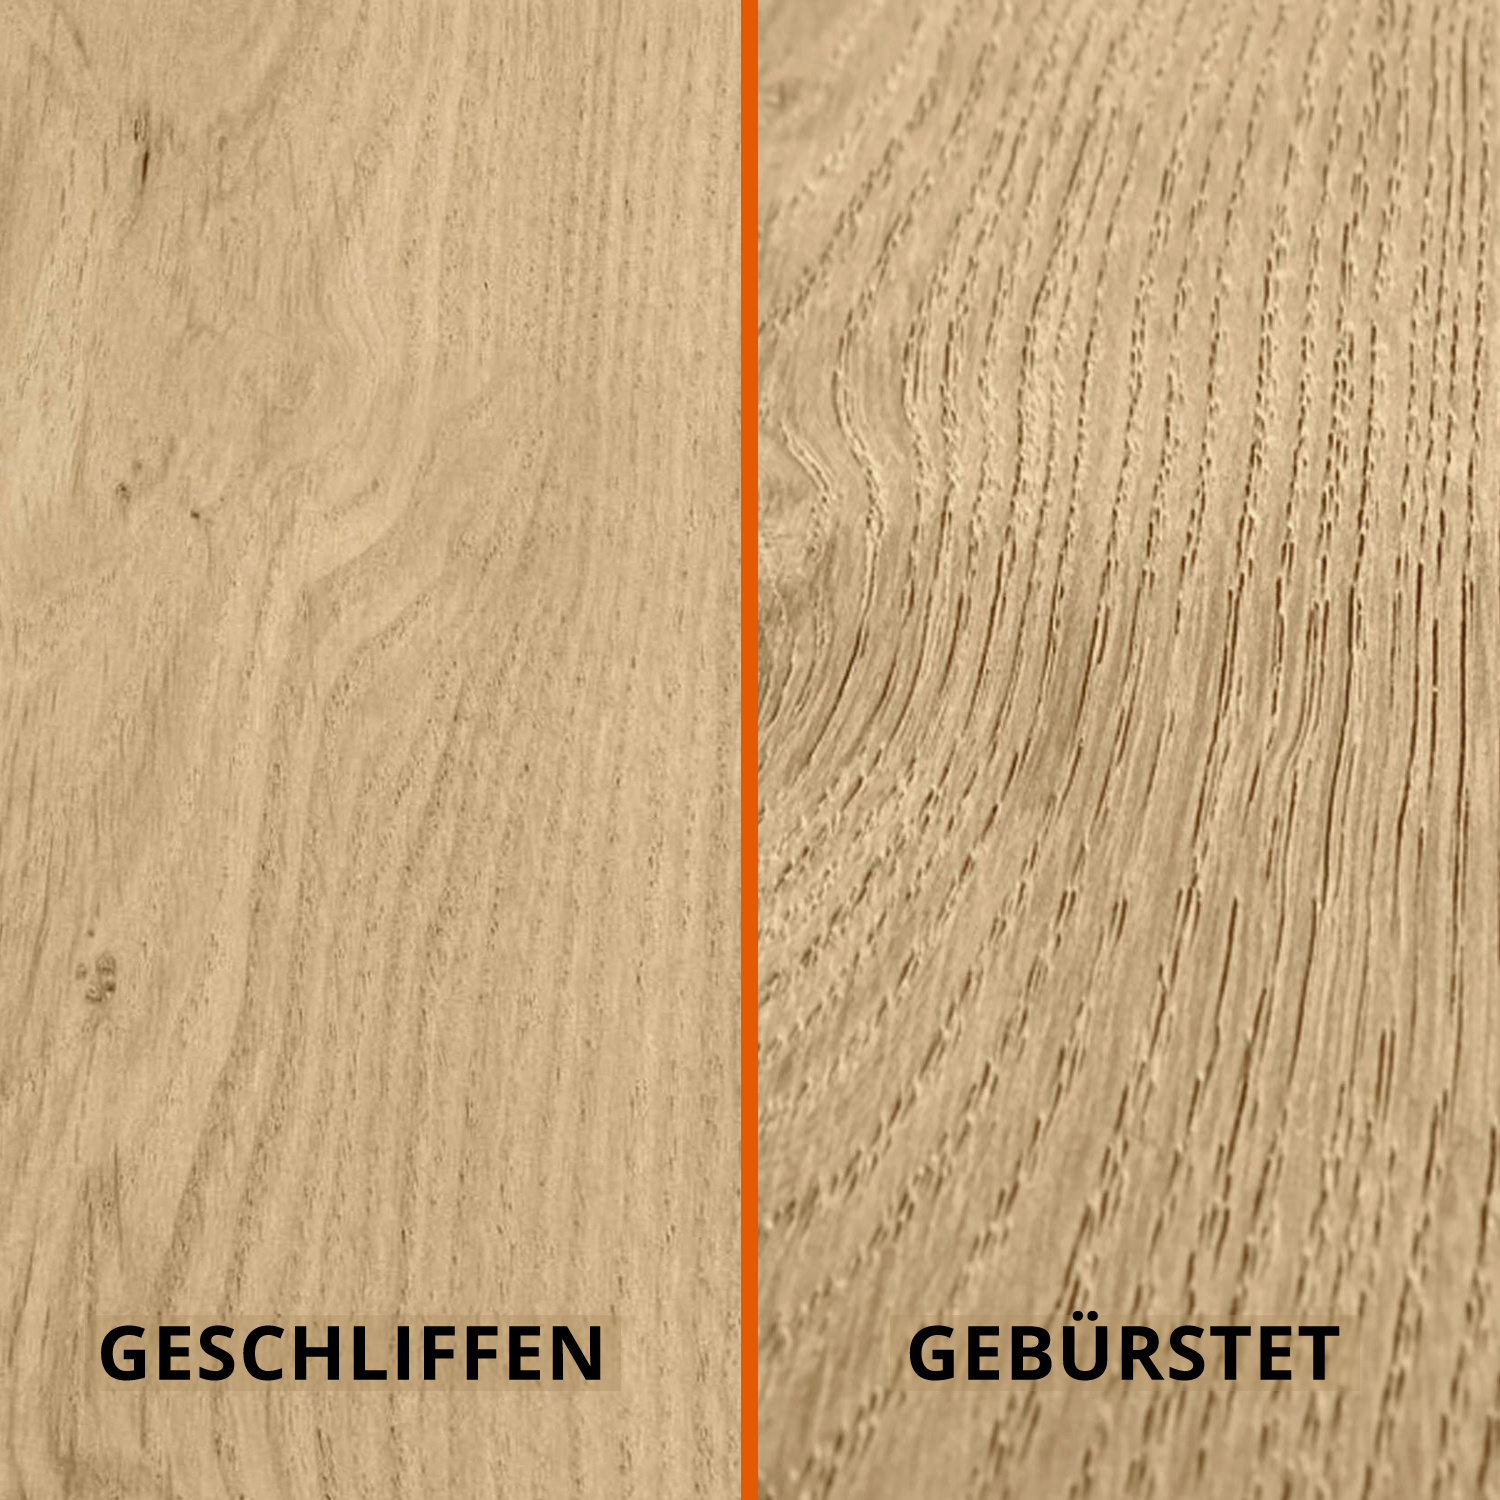  Tischplatte Eiche rund nach Maß - 4 cm dick - Eichenholz A-Qualität - Durchmesser: 30 - 180 cm - Eiche Tischplatte rund massiv - verleimt & künstlich getrocknet (HF 8-12%)